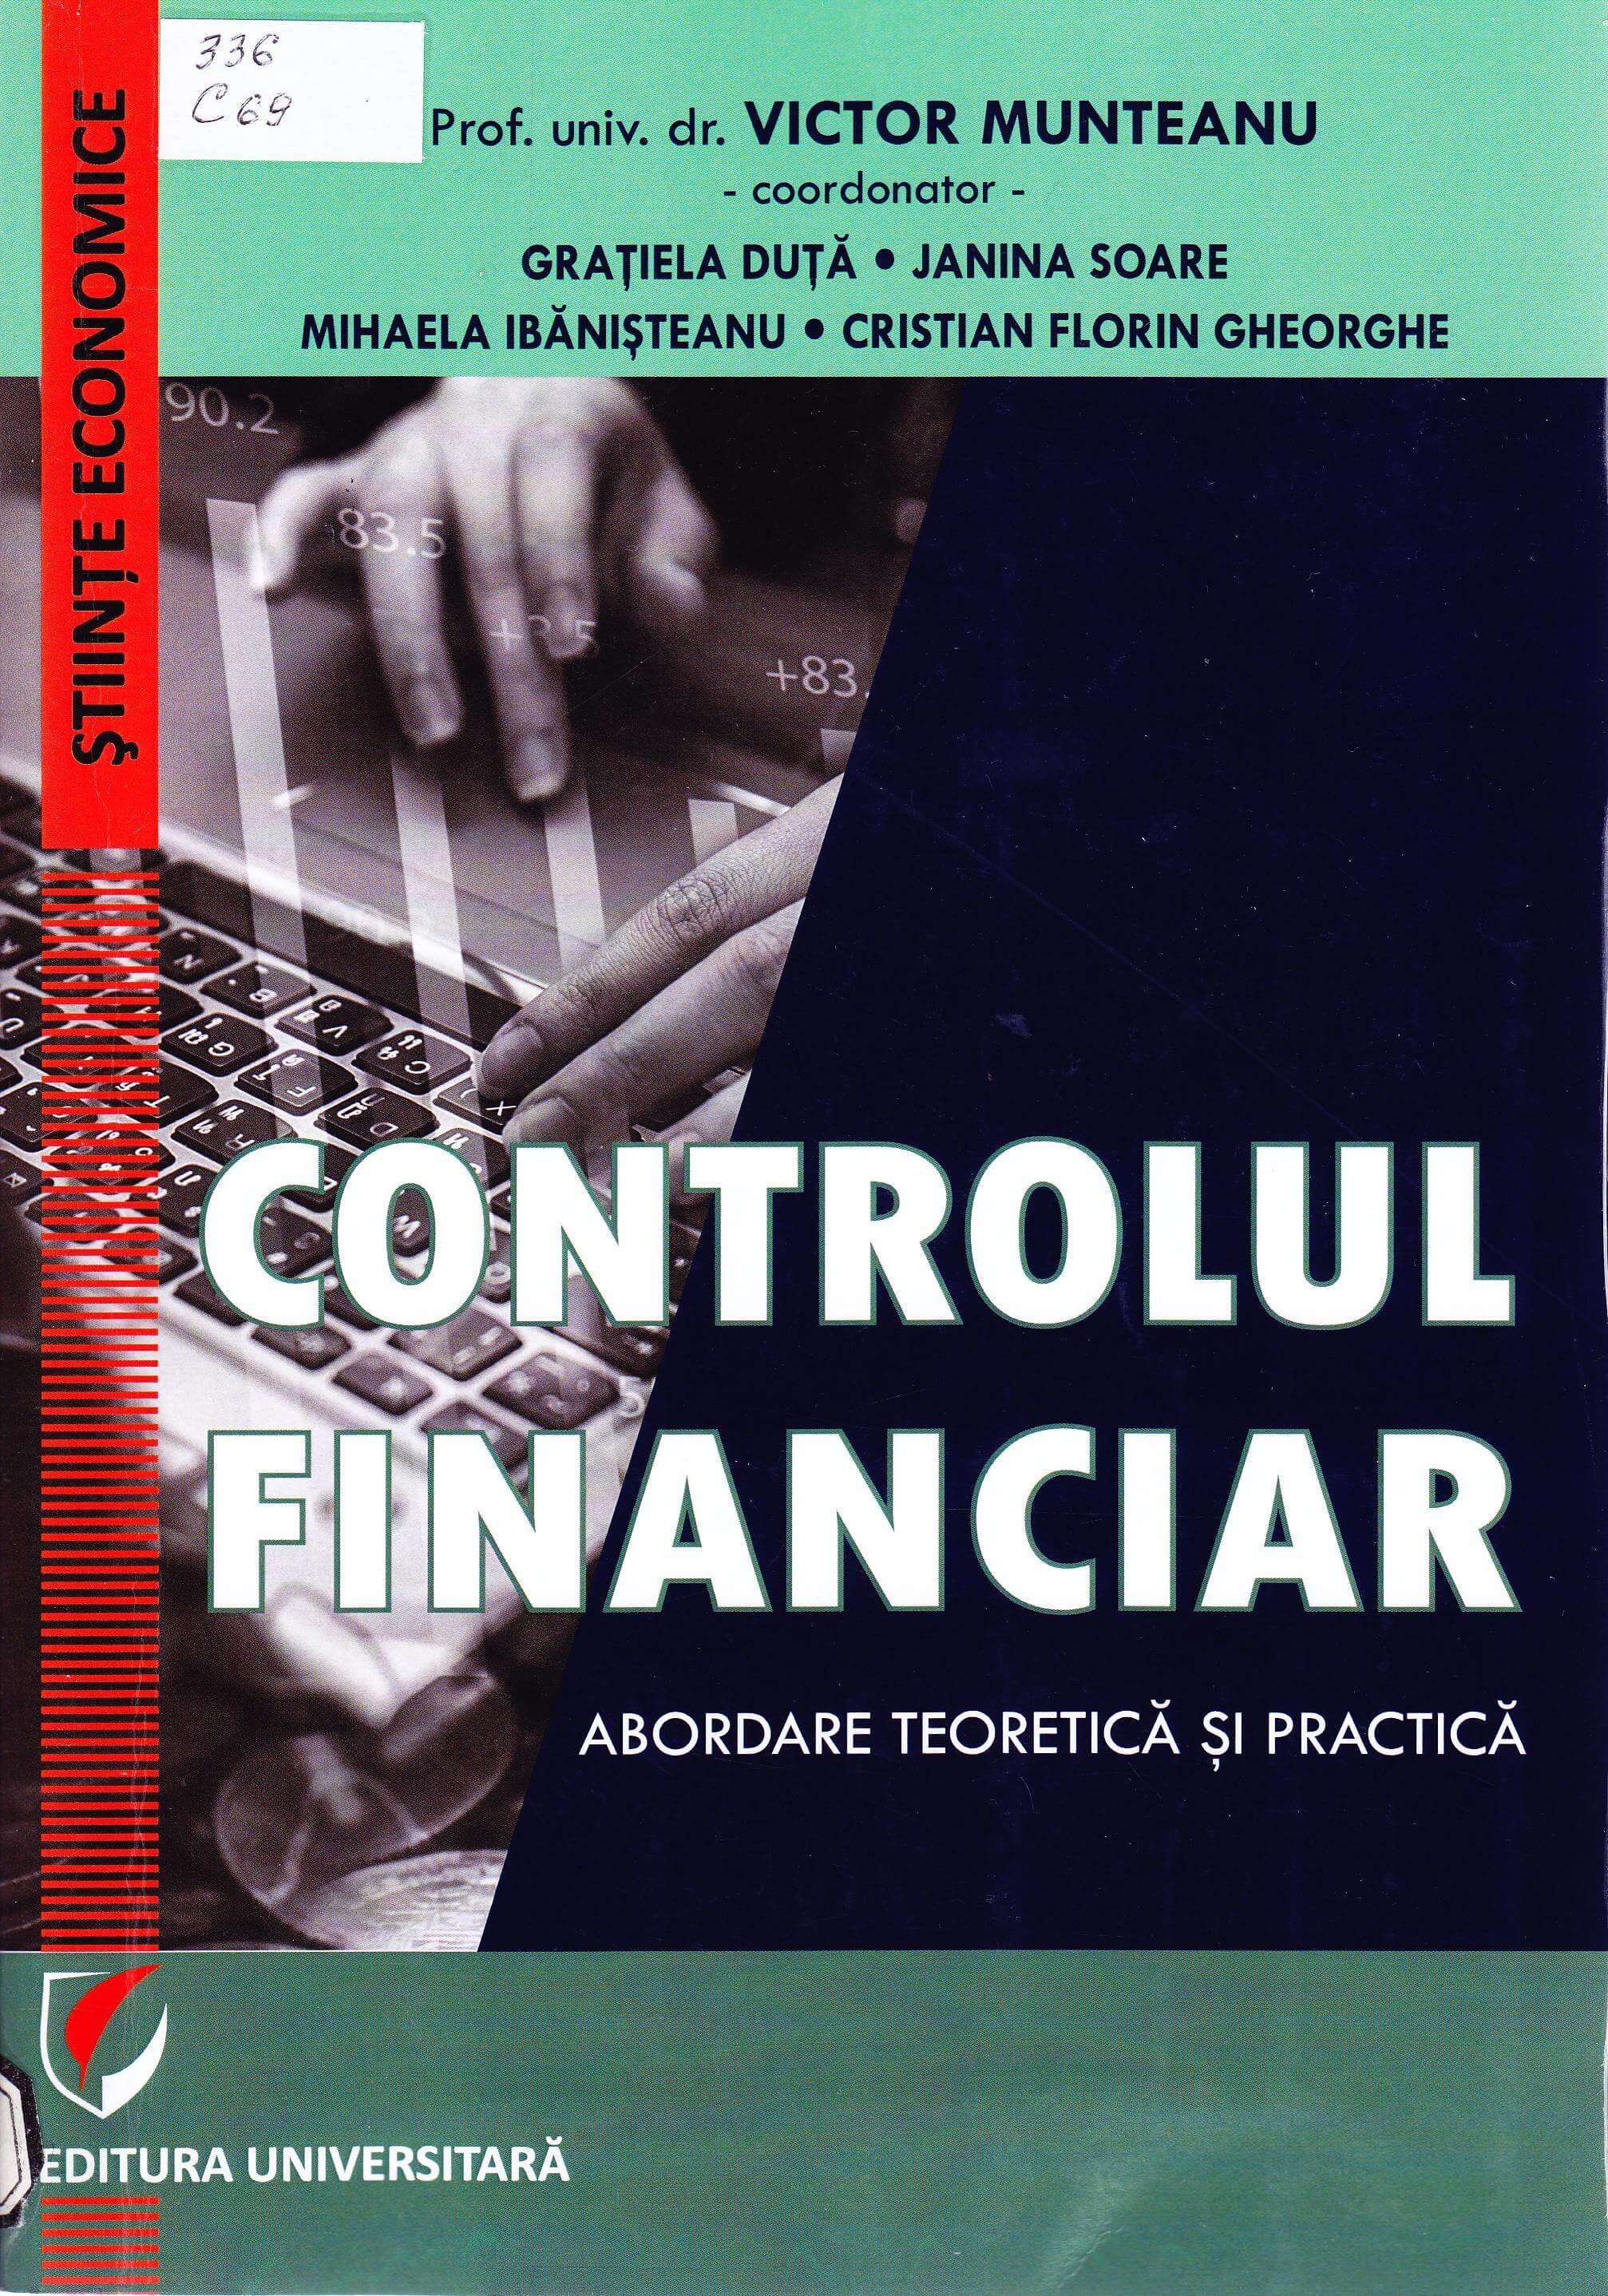 Controlul financiar: abordare teotetică și practică